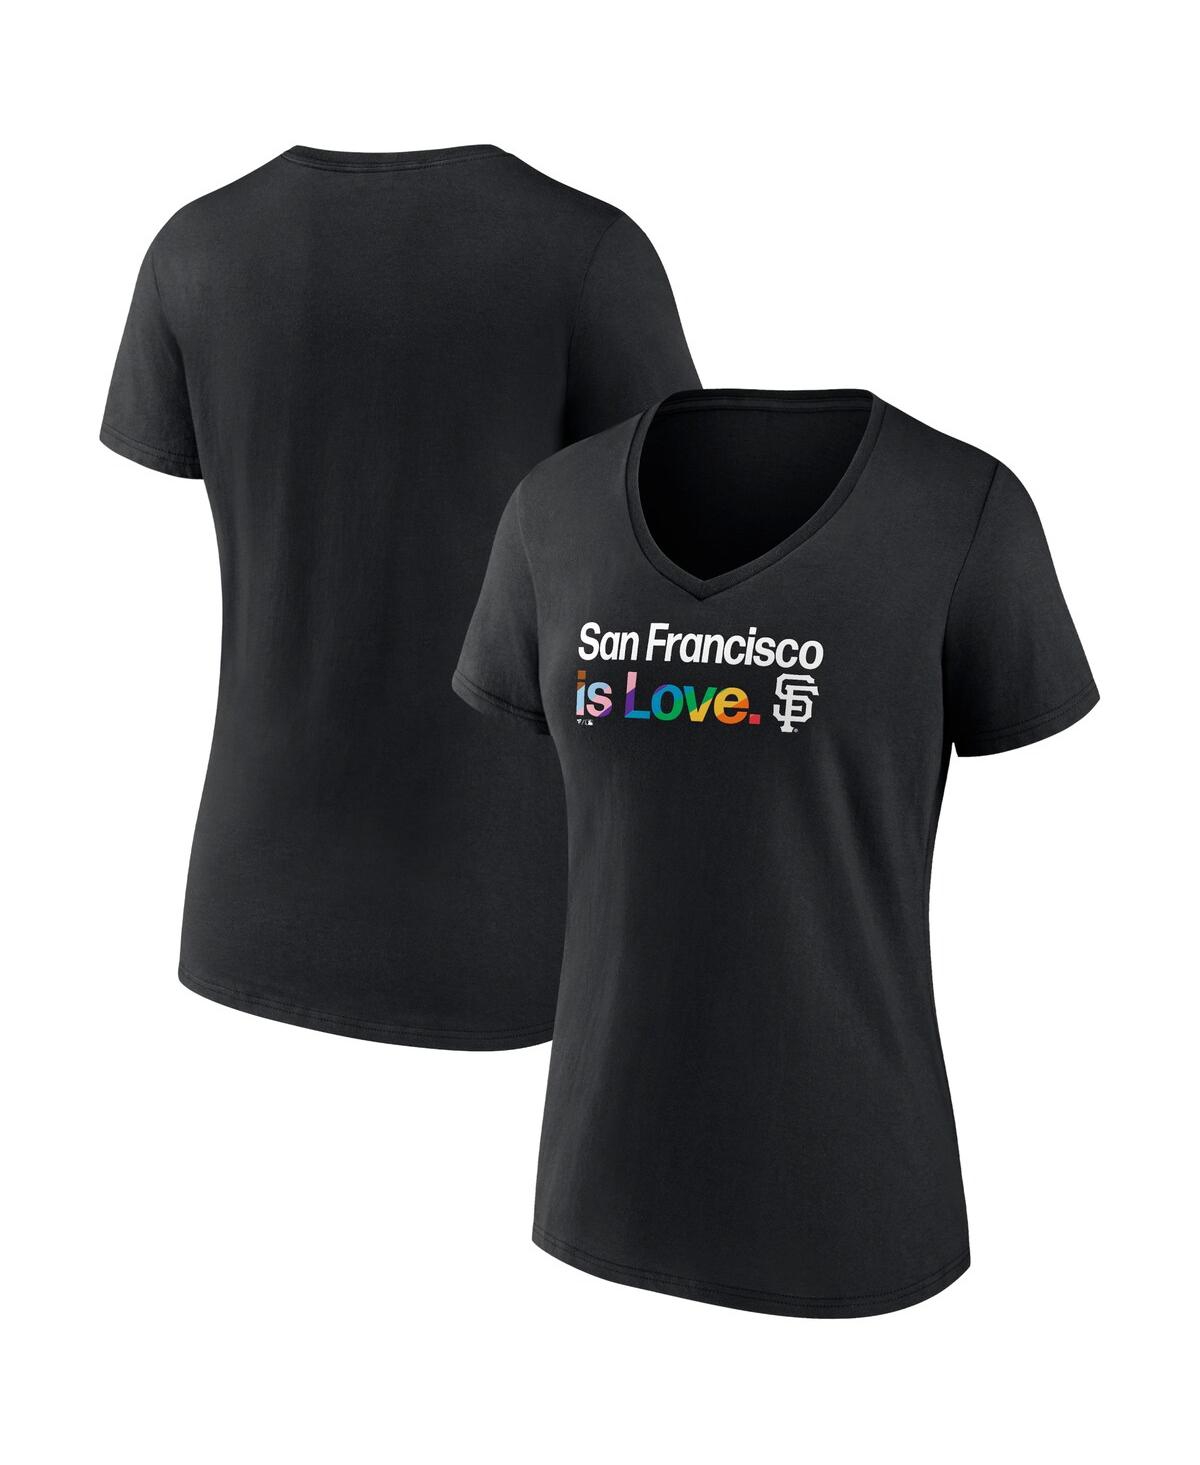 St. Louis Cardinals Profile Women's Plus Size T-Shirt Combo Pack -  Black/Heather Gray